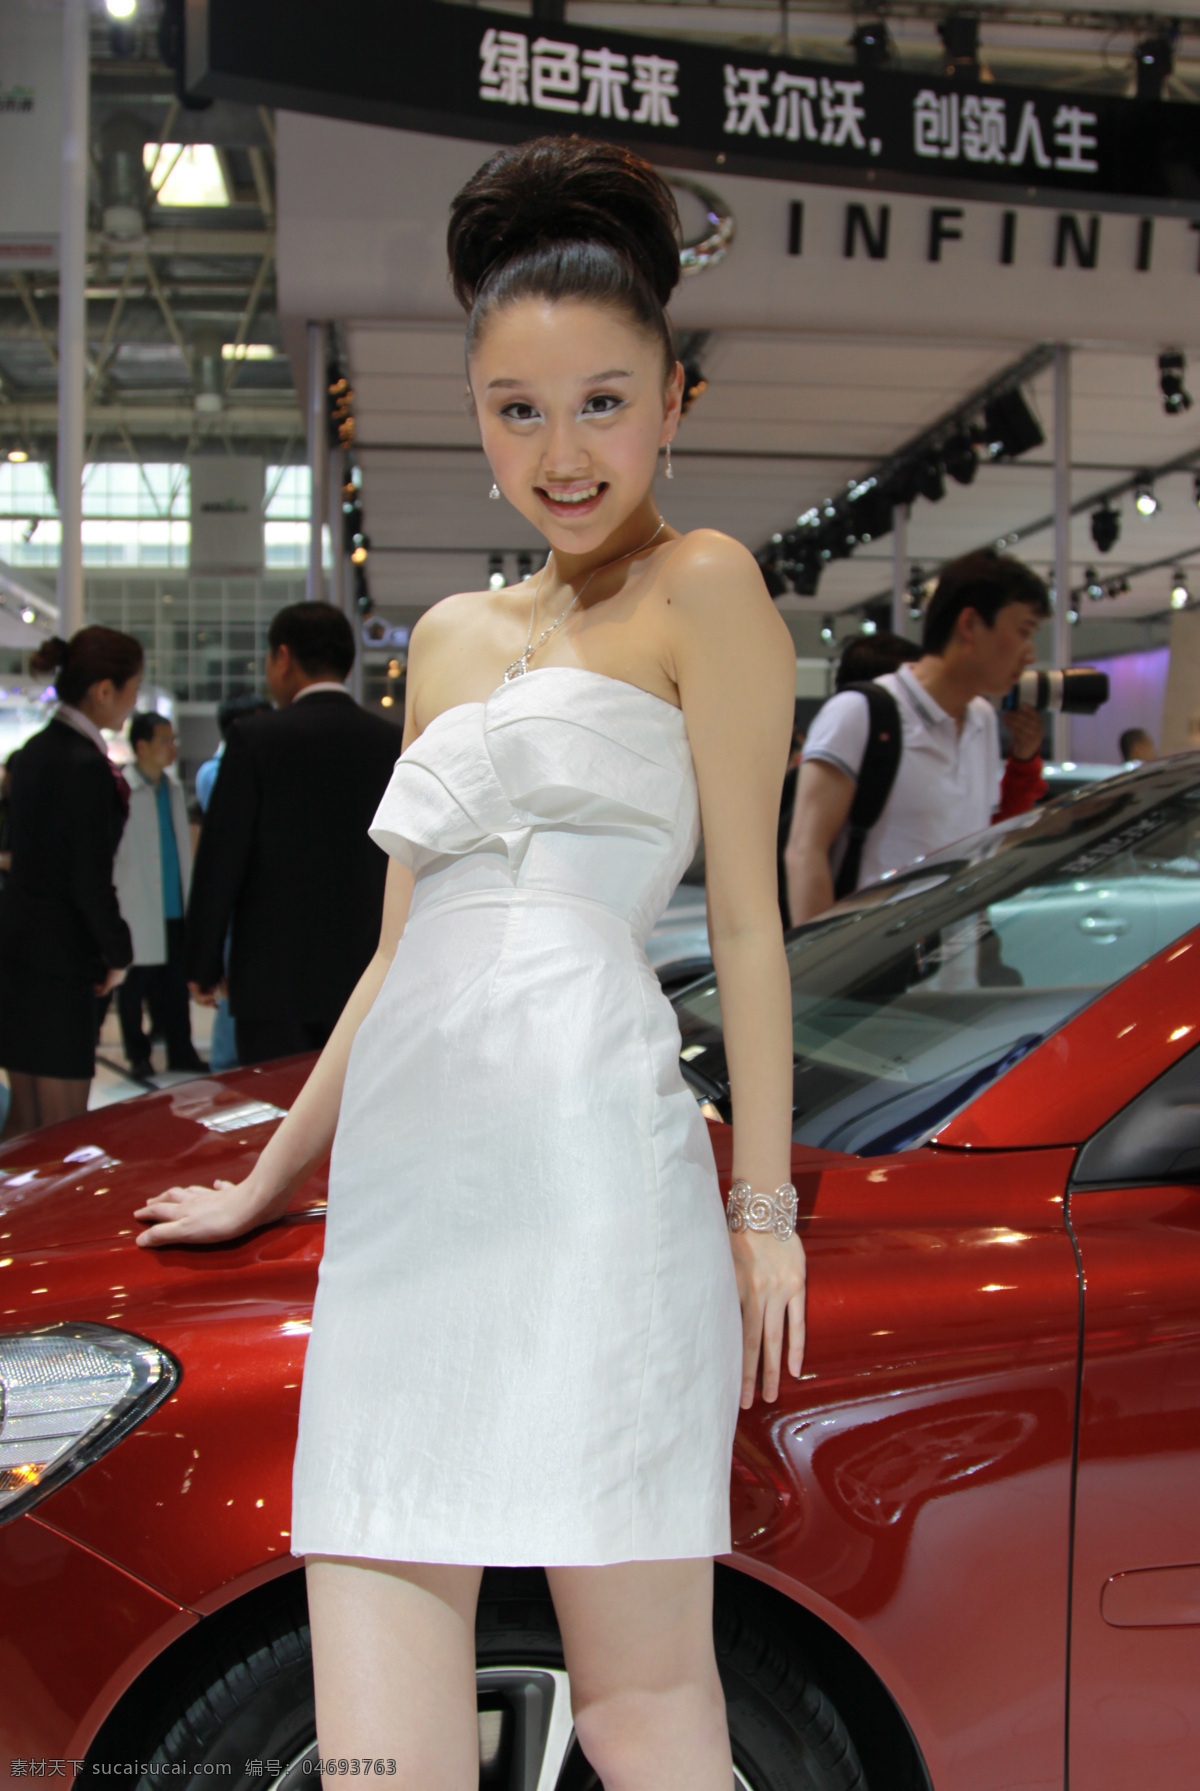 香车美女 北京 2010 国际车展 表演 激情 车模 白色礼服 时尚发型 红色轿车 微笑 职业人物 人物图库